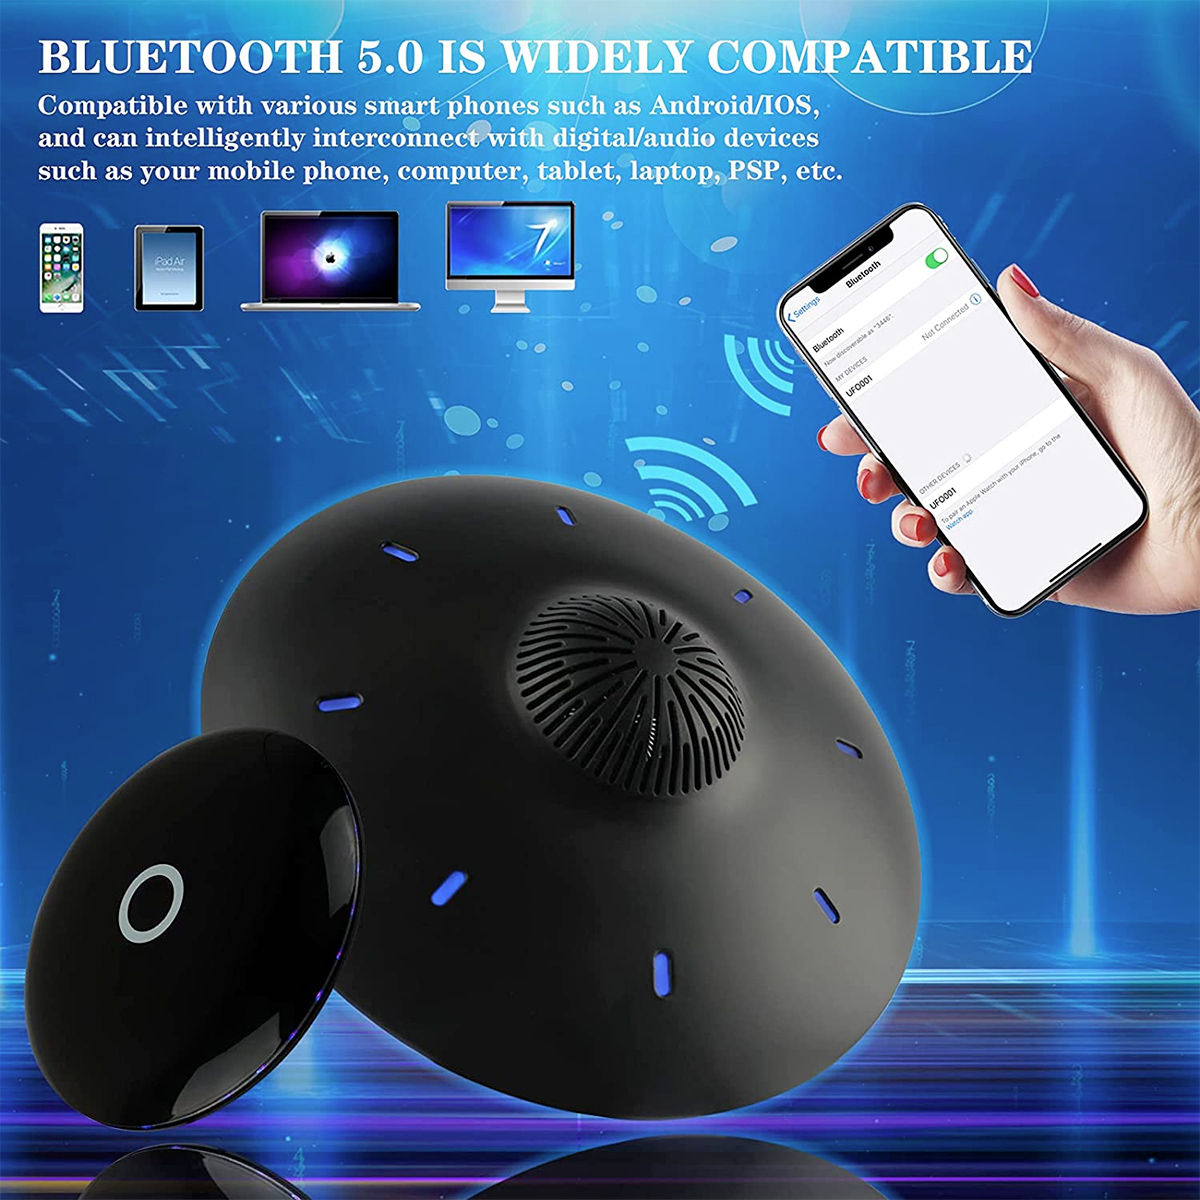 Caixa de som flutuante UFO Anti-Gravity Magnetic Levitating Bluetooth Speaker